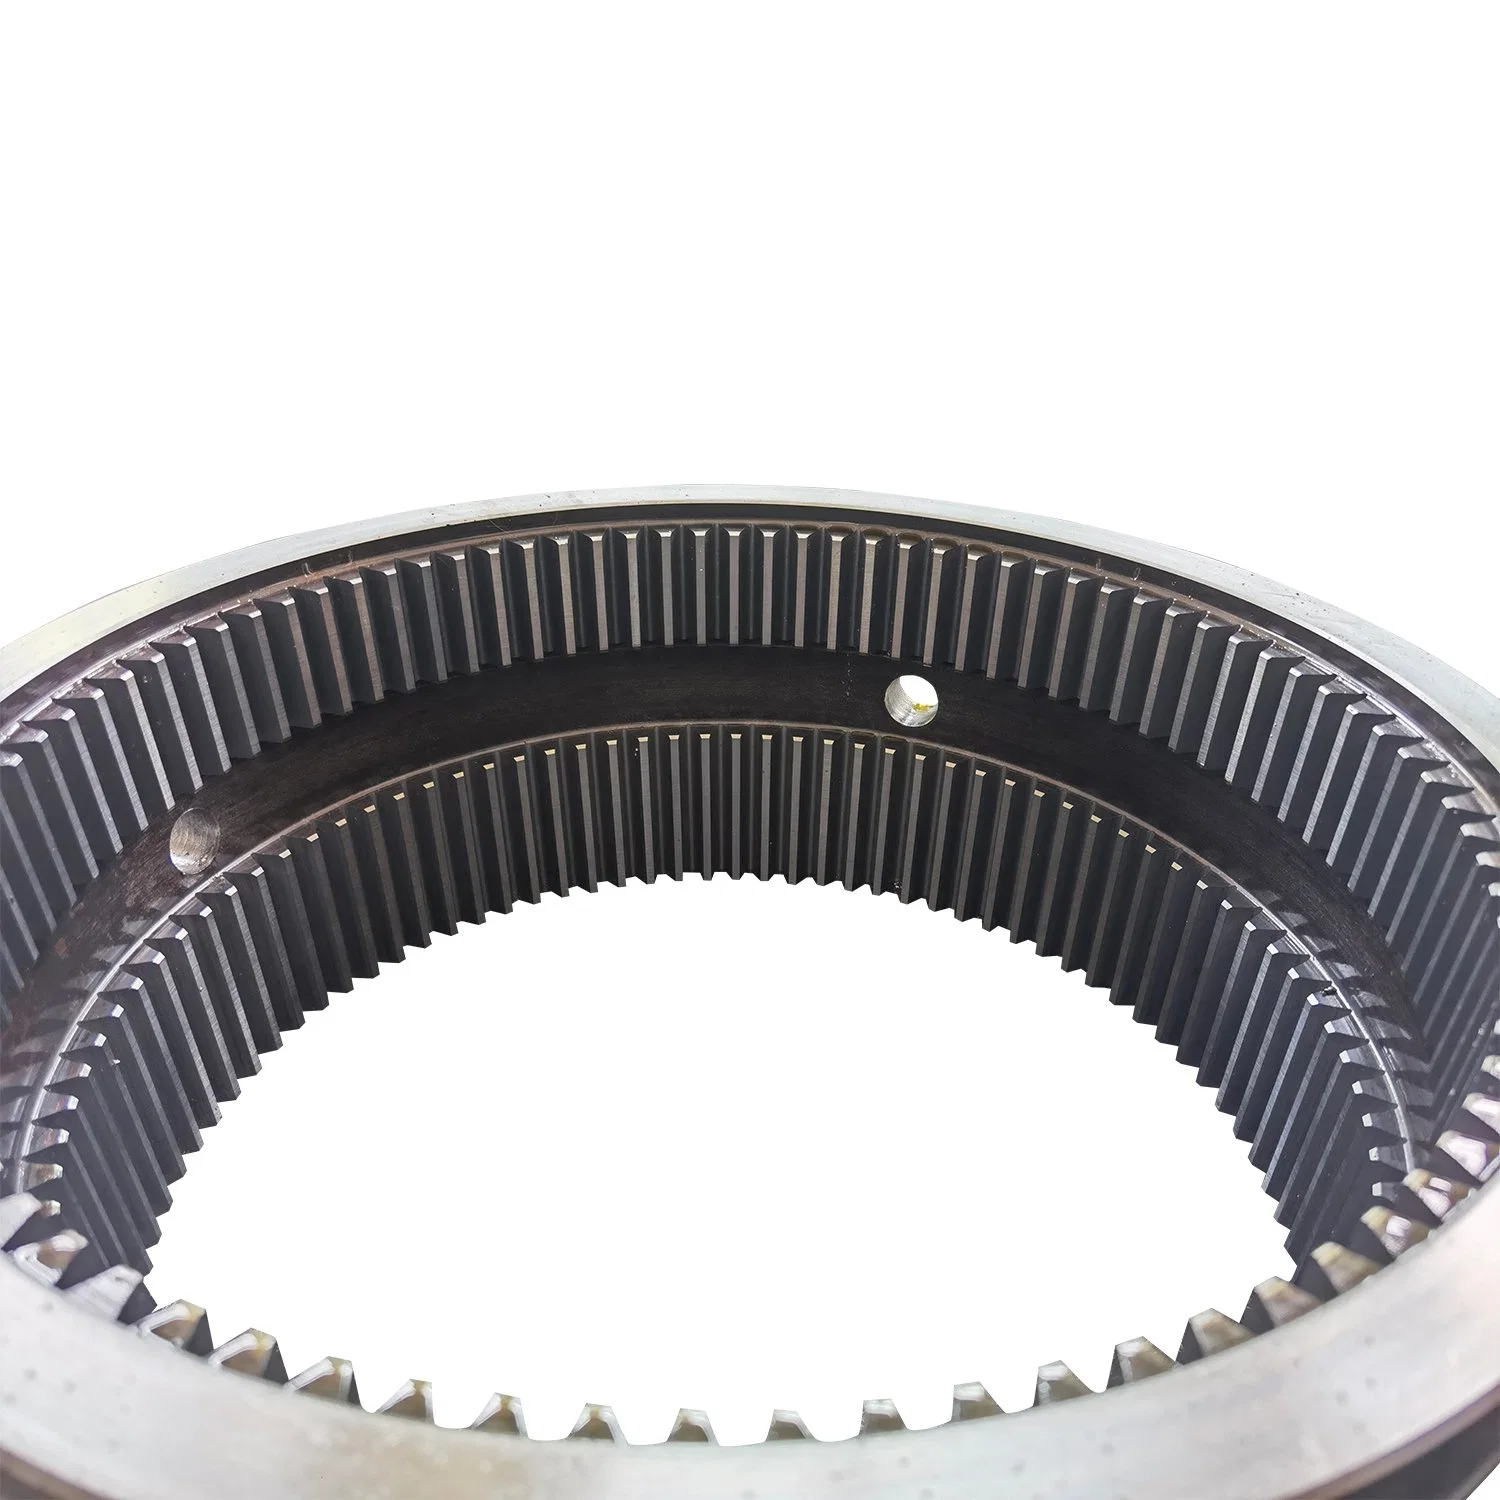 Ligas de aço engrenagem das rodas forja o anel giratório Fabricante Percission Rodada Forjados Rolamento de Rolete do anel do rolete